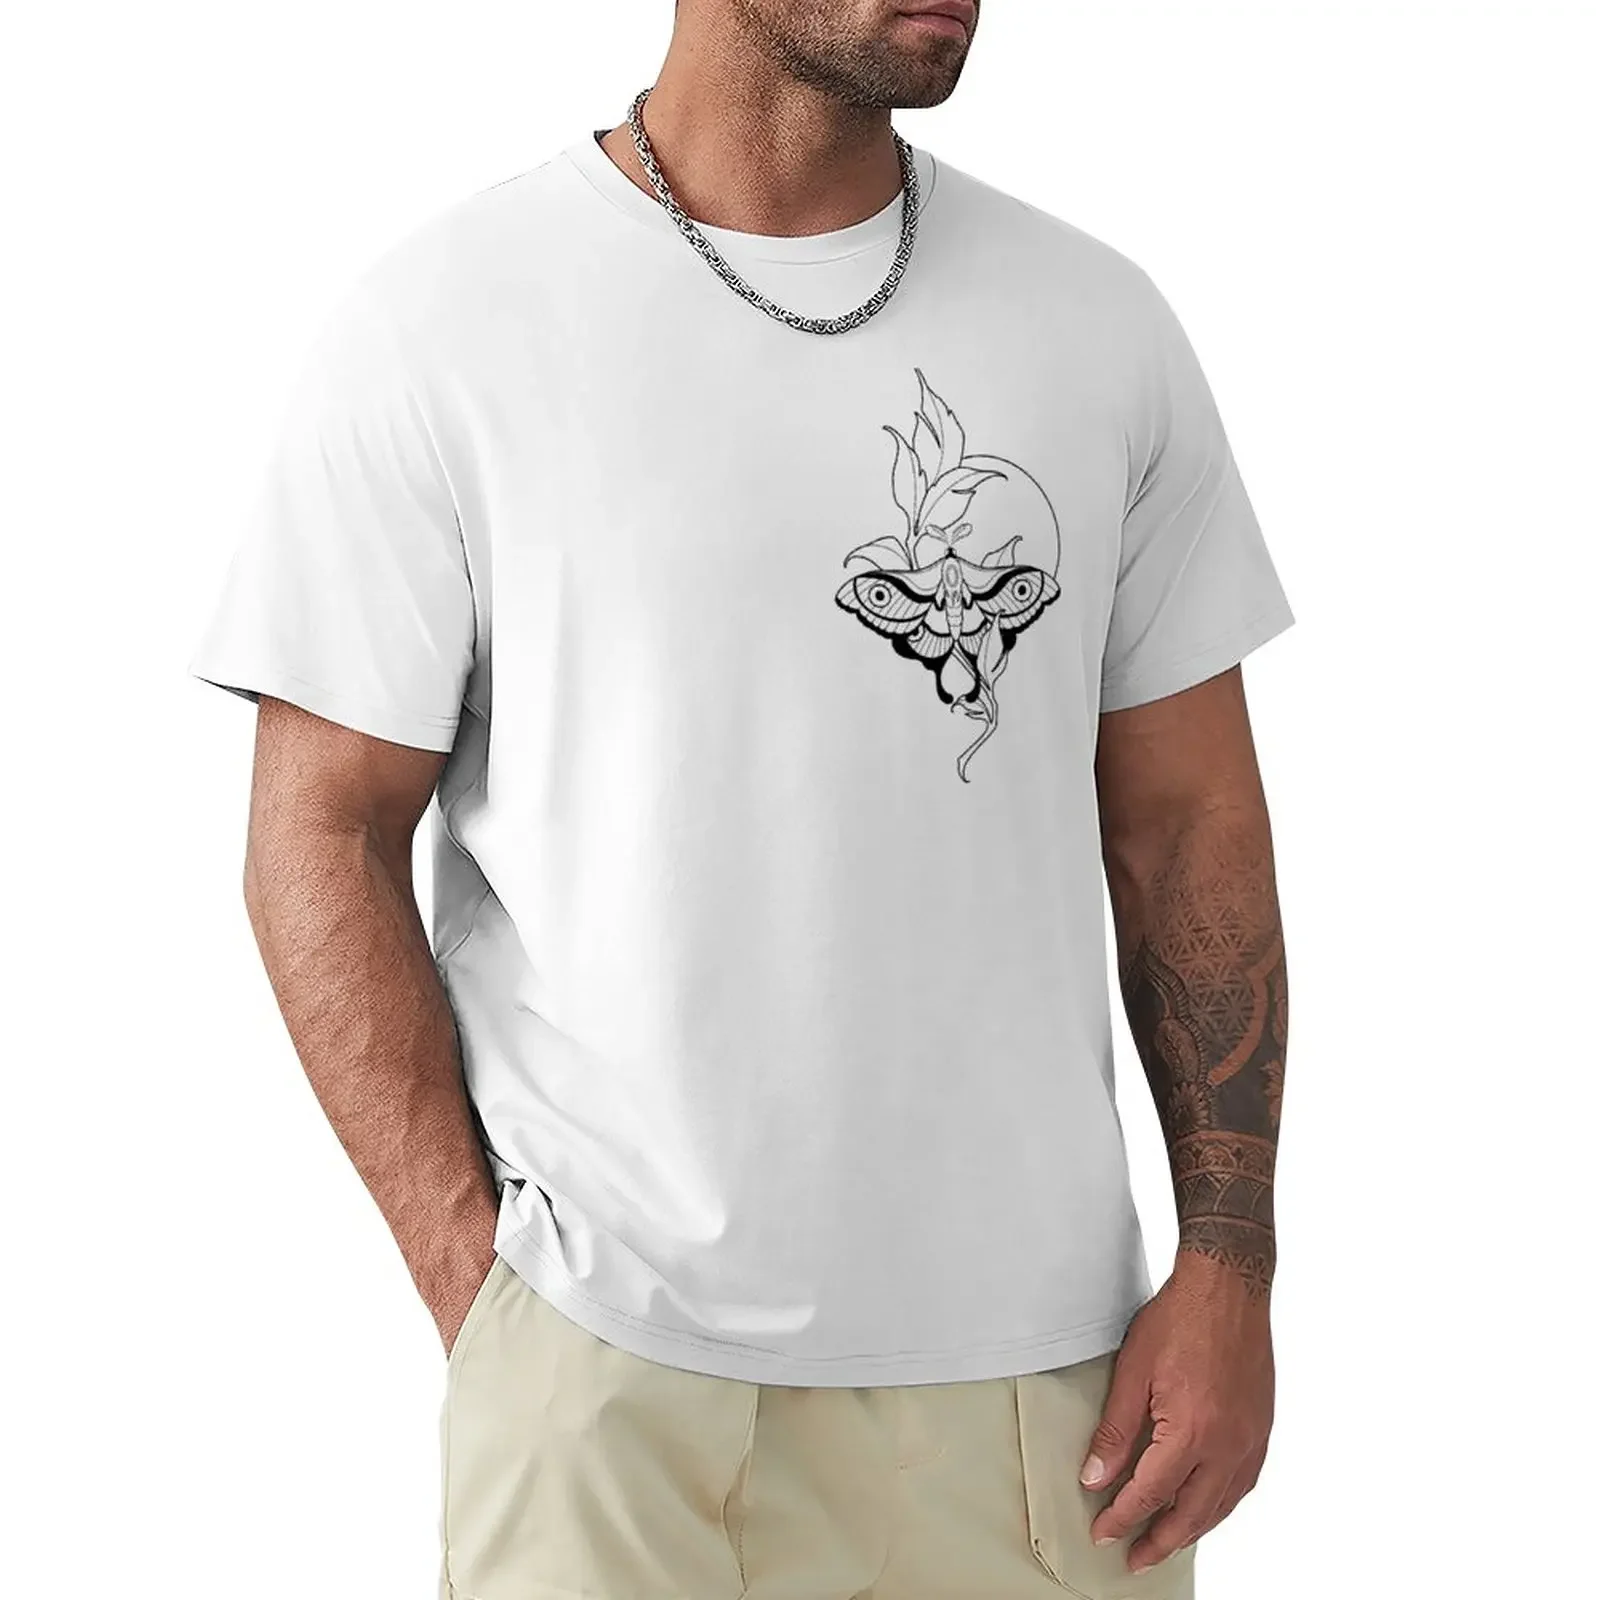 

Футболка Luna, индивидуальный дизайн, ваша Эстетическая одежда, футболка с коротким рукавом, мужские футболки